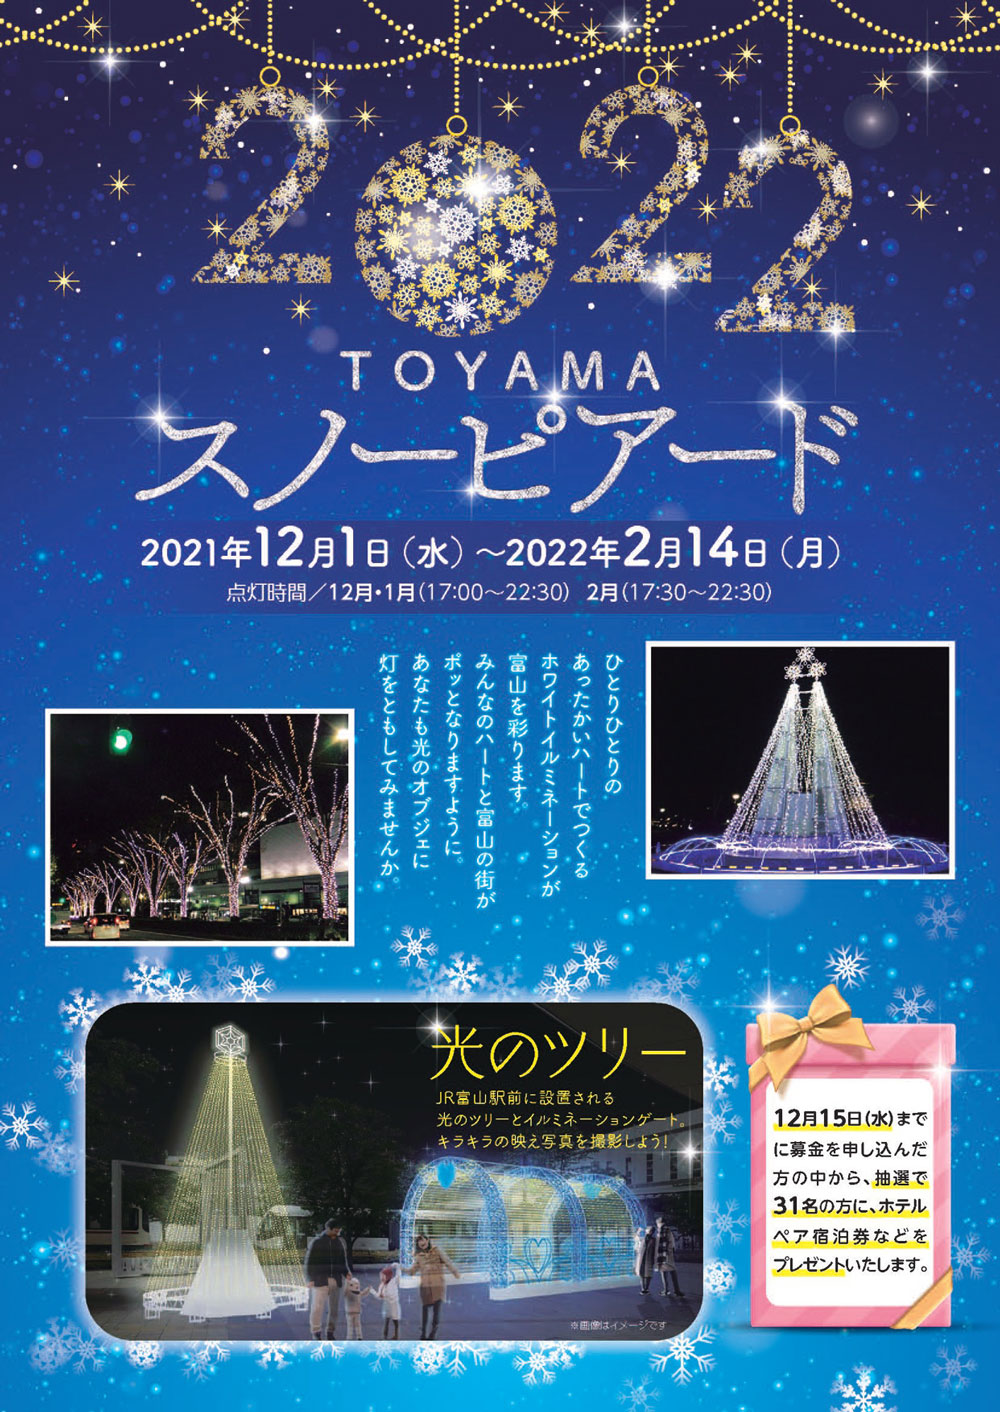 【富山スノーピアード2021/2022】富山駅前ホワイトイルミネーションでロマンチックな夜を！